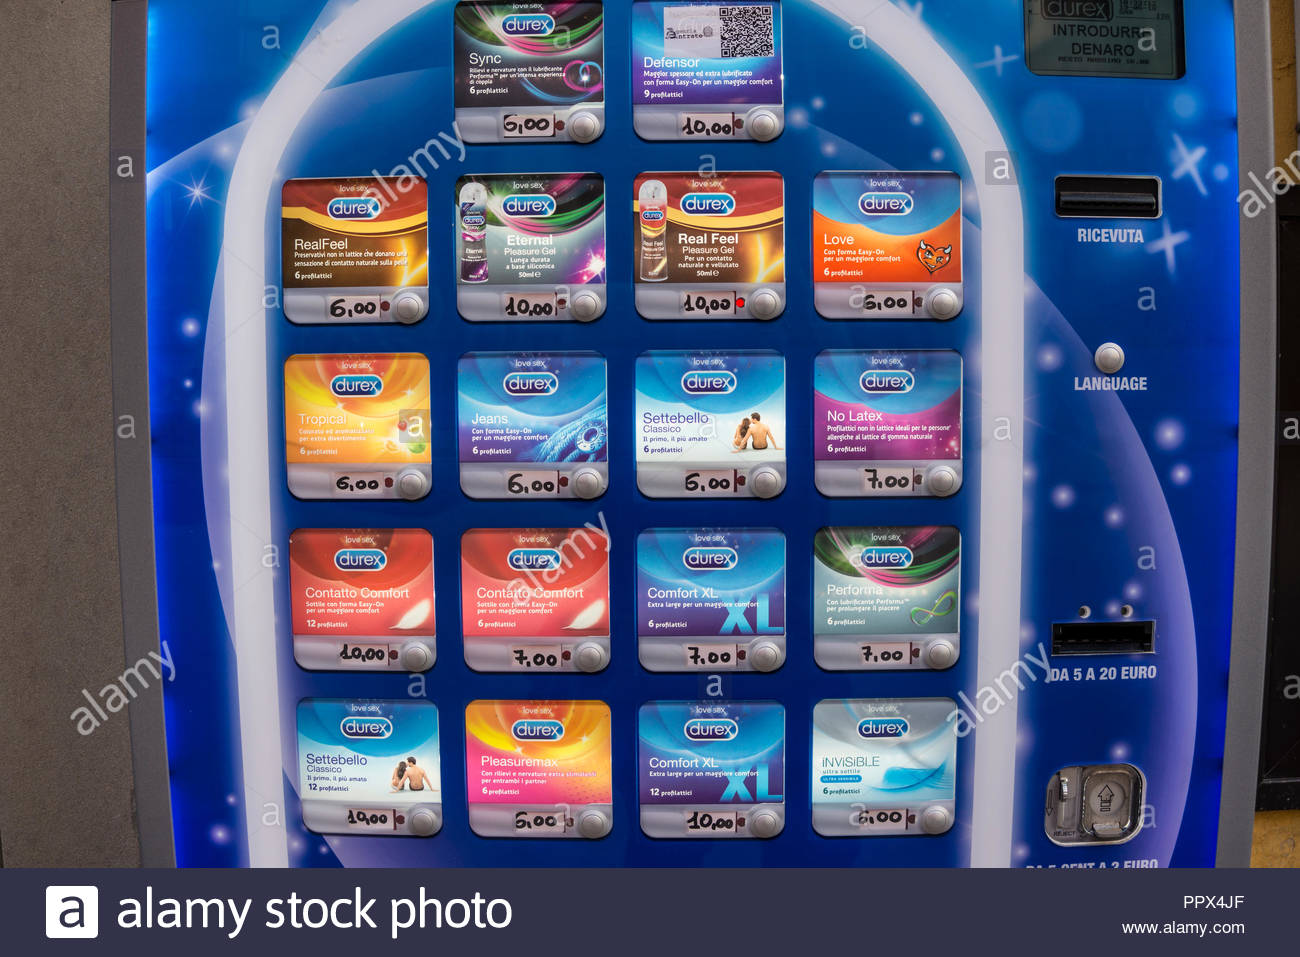 Durex Condom Stock Photos Image